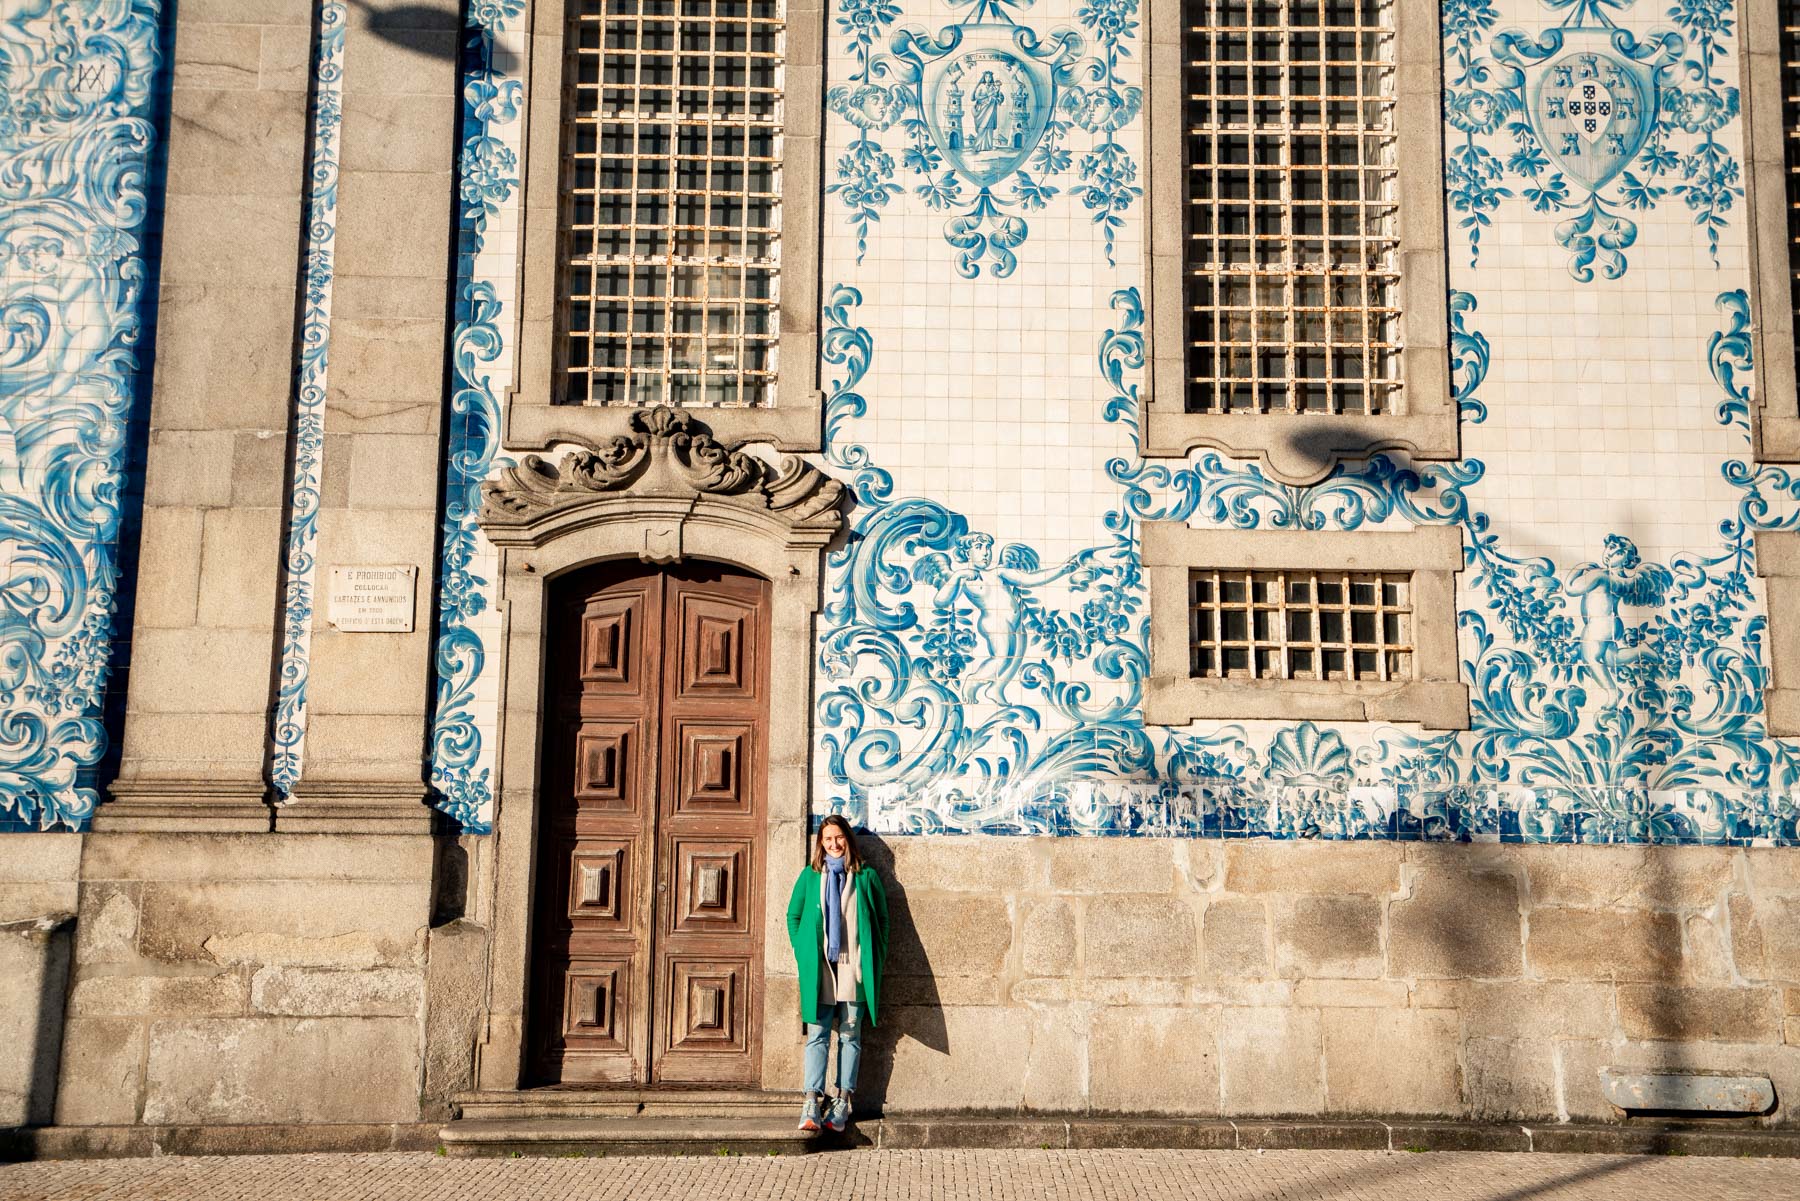 Tiled churches in Porto